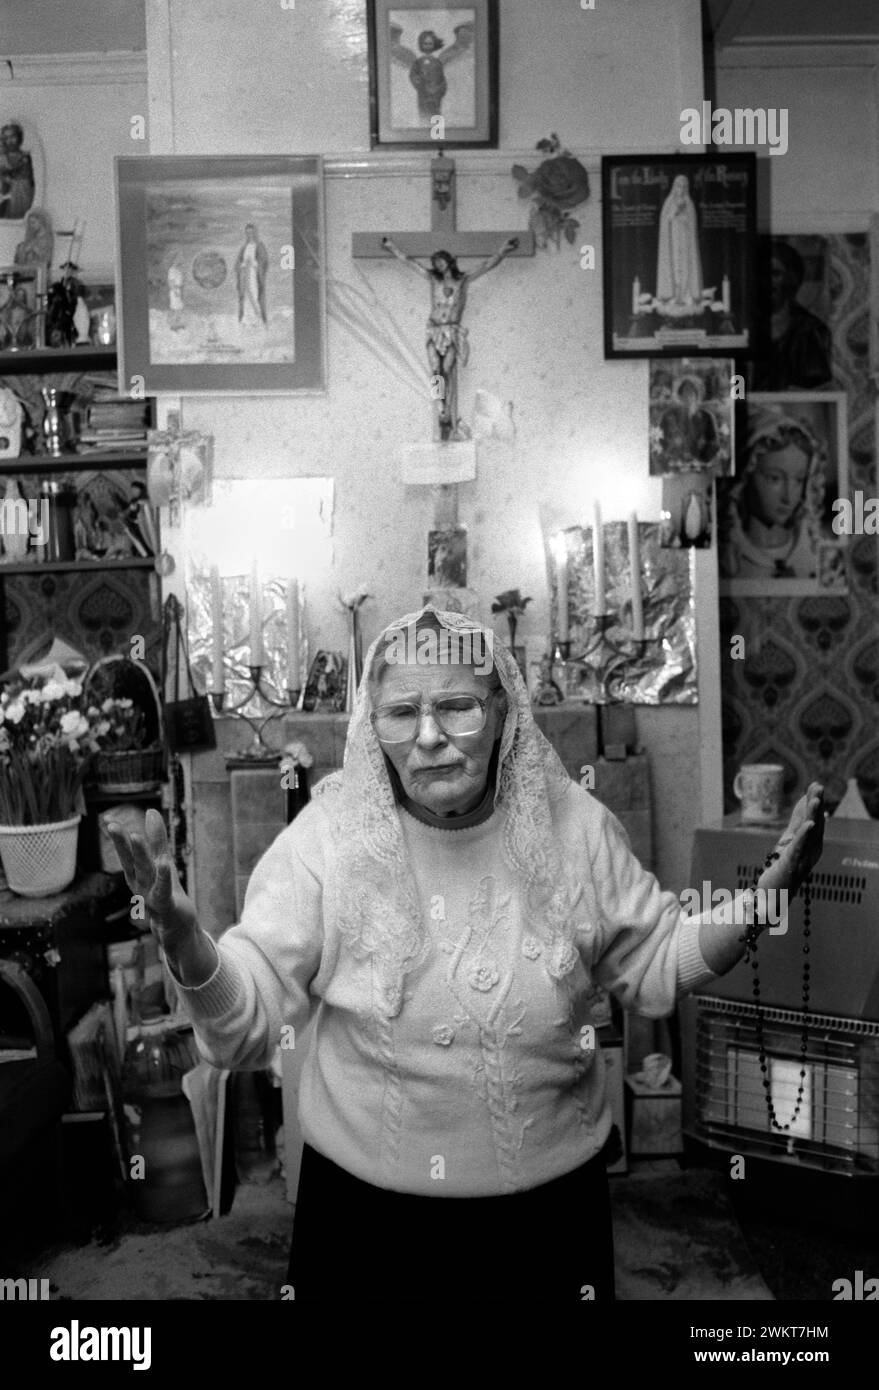 Catholic, Seer, Mystic 1990s UK. Mme Nora Arthurs (1916 - 2011) une boîte vocale catholique, voyant et mystique, dans sa maison connue sous le nom de «Maison de Marie» sur Roggel Road, Canvey Island menant une réunion de prière. Canvey Island, Essex, Angleterre années 1996 1990 Royaume-Uni HOMER SYKES Banque D'Images